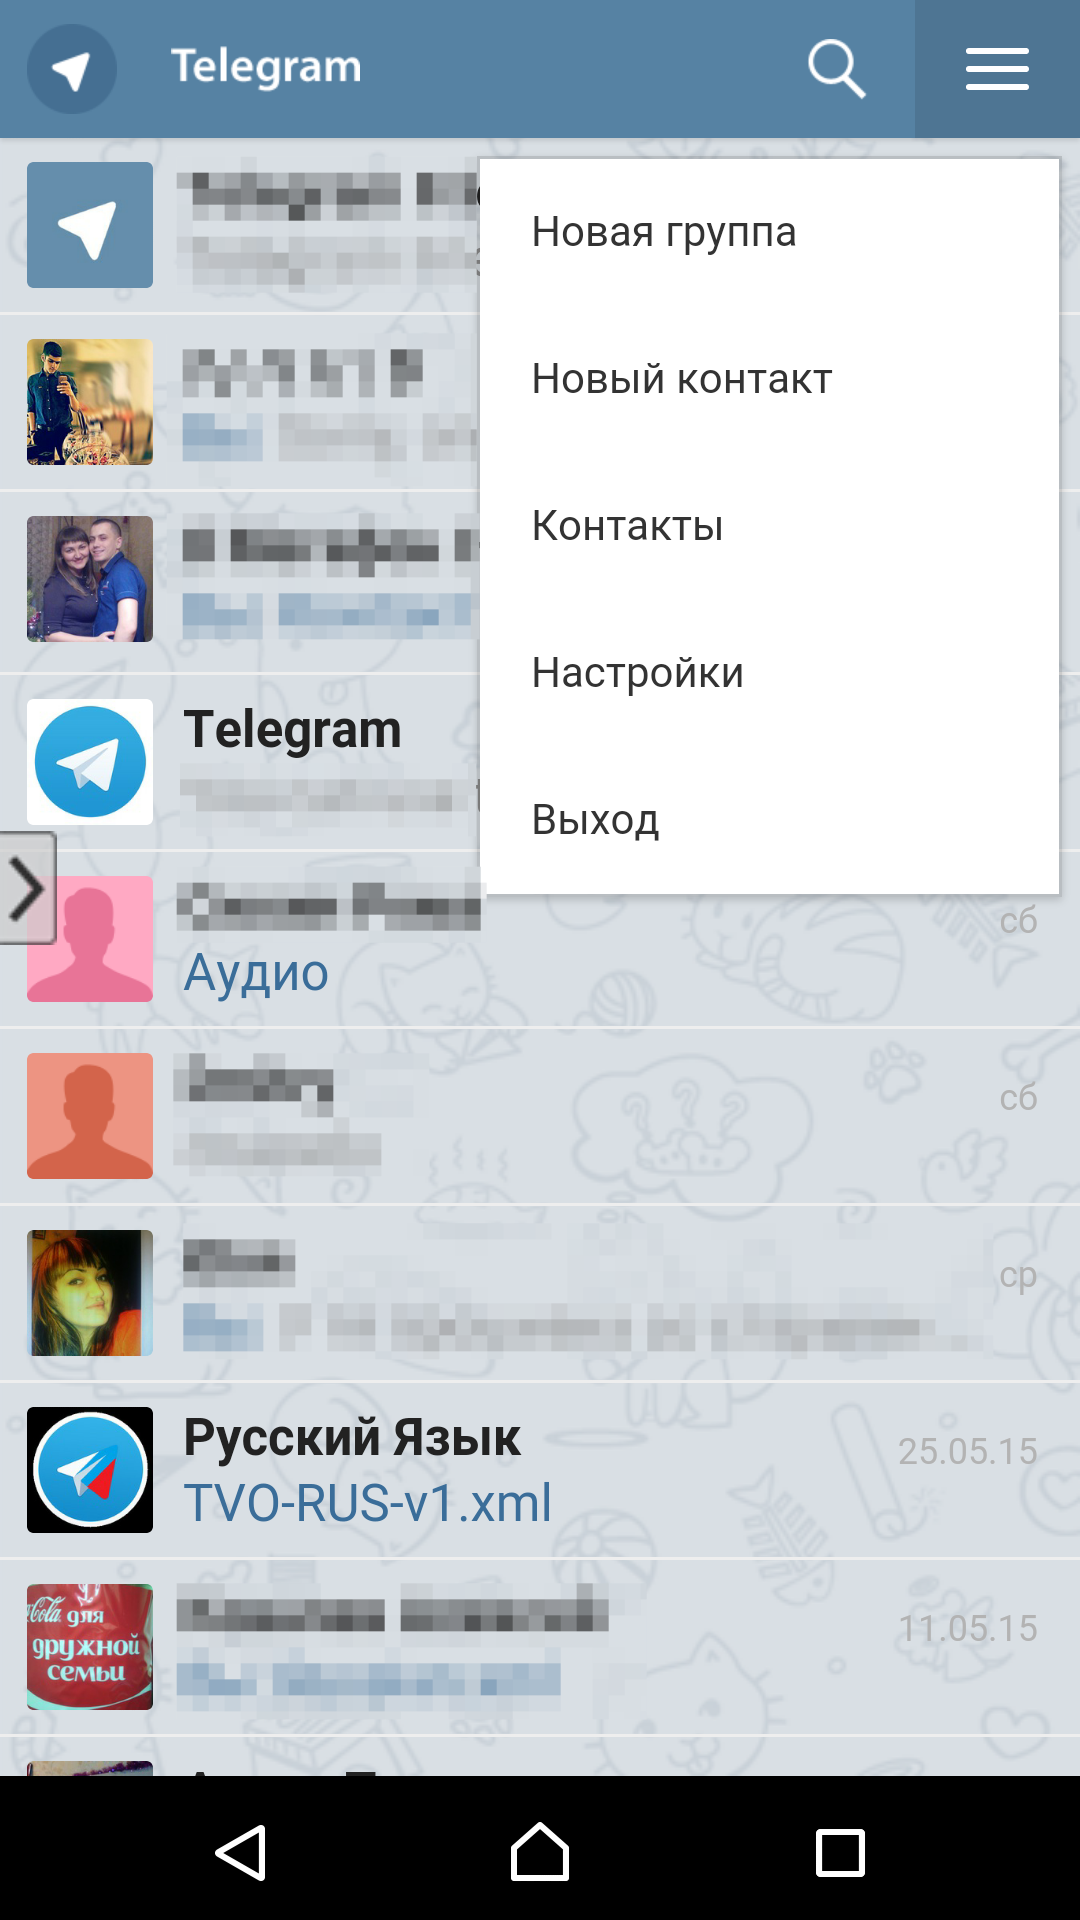 Телеграмм онлайн на русском языке вход бесплатно по номеру телефона фото 107